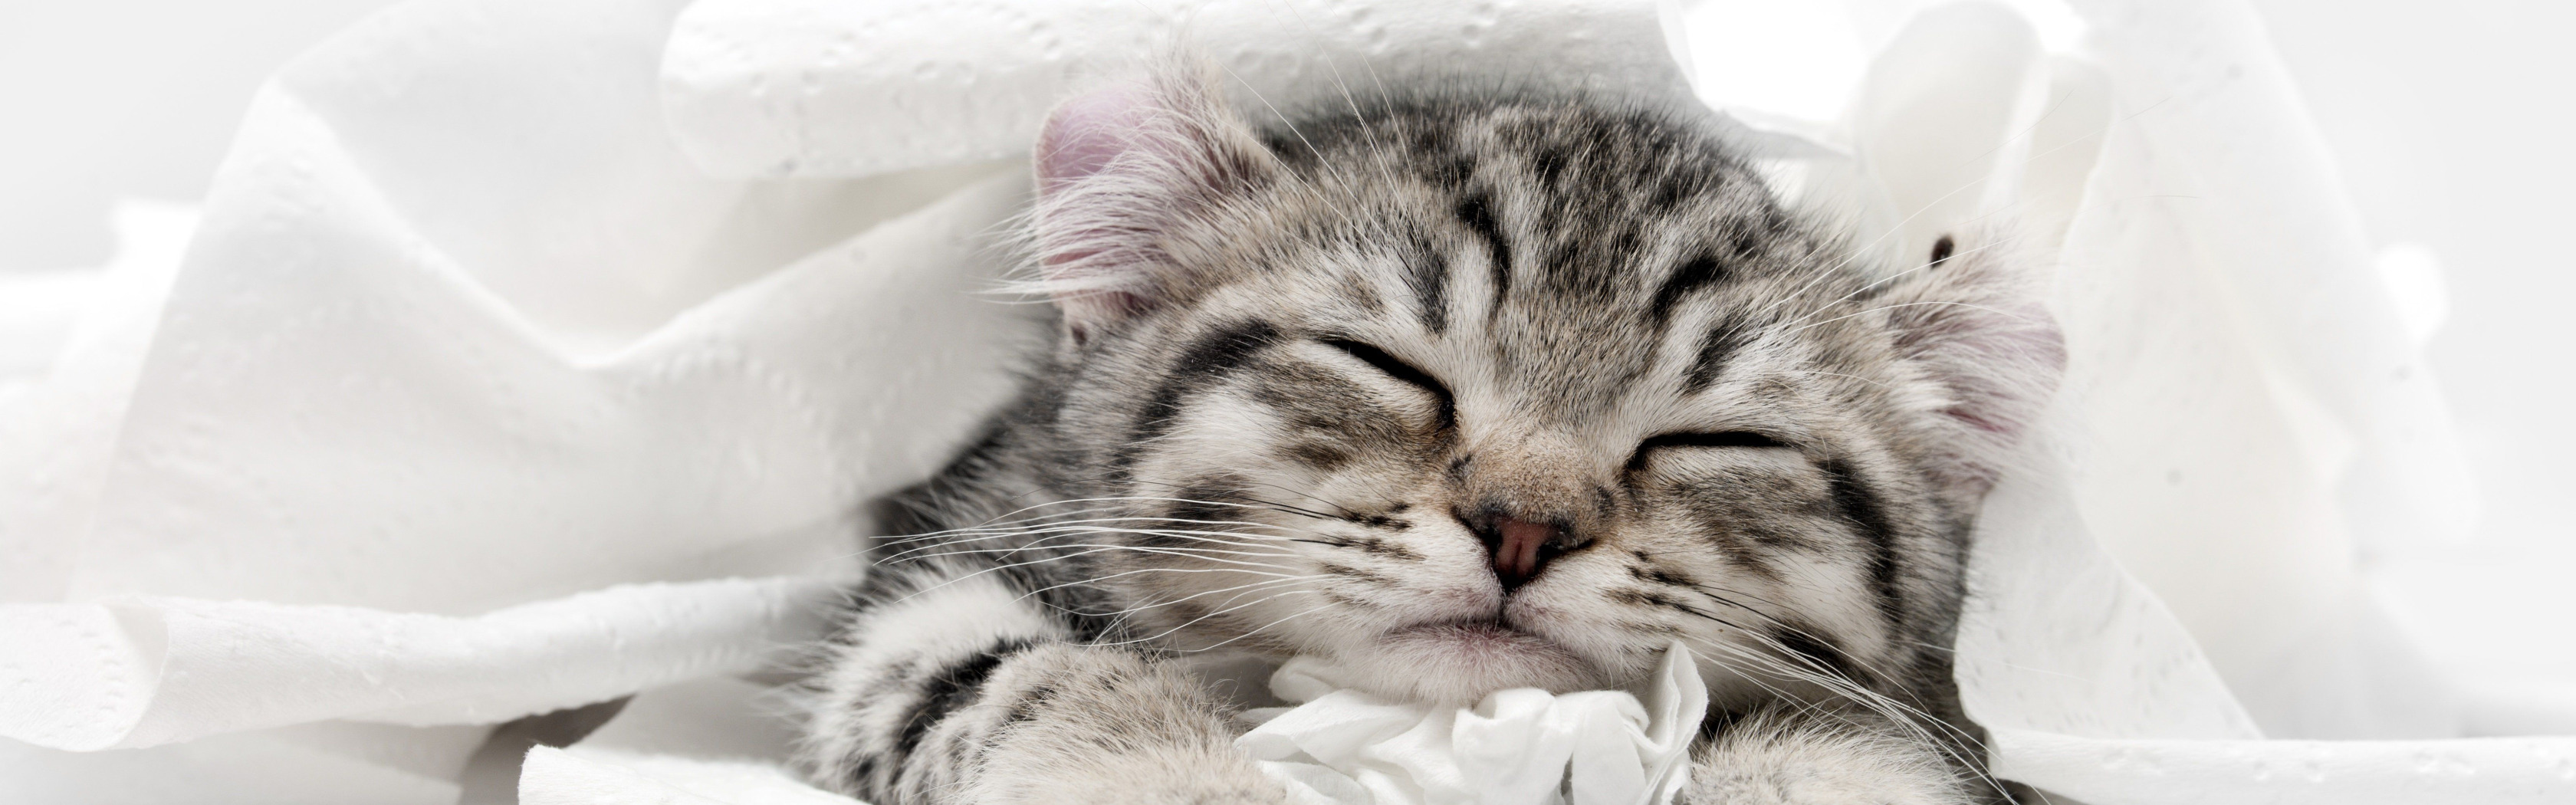 Спящий серый котенок. Серый котенок во сне. Баннер с серыми котятами. К чему снится серый котенок. Котята миллер